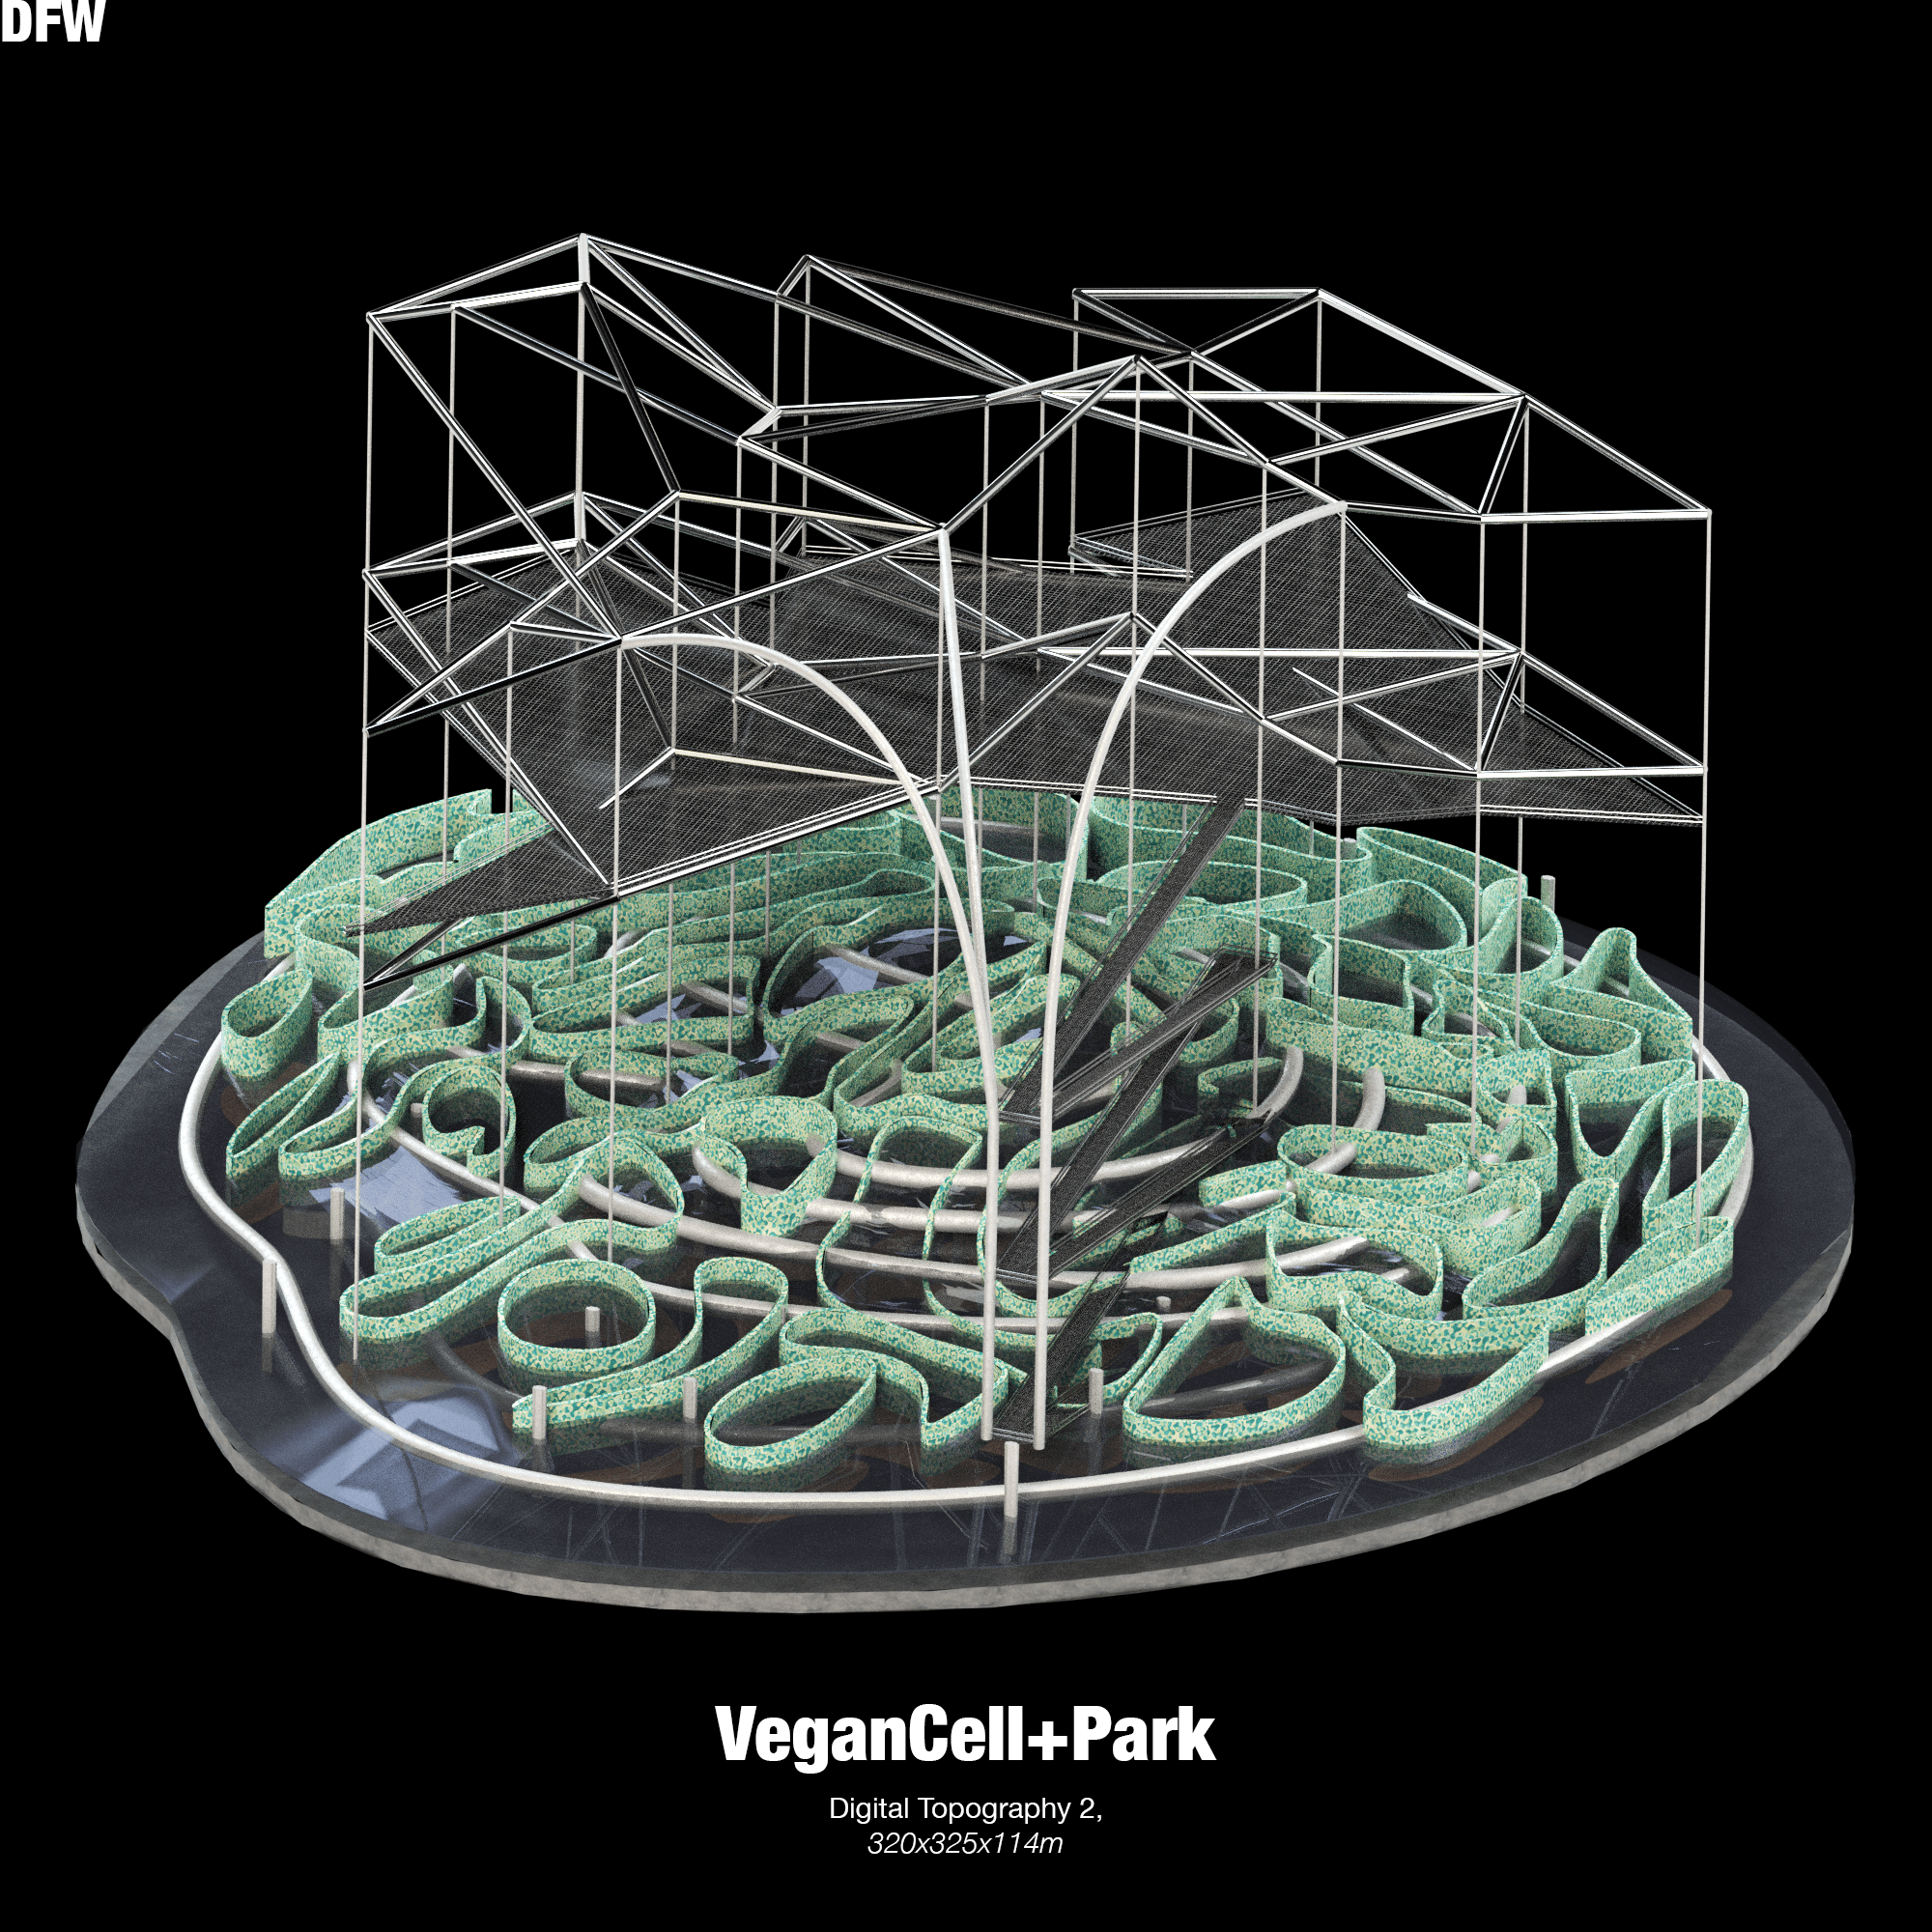 VeganCell+Park